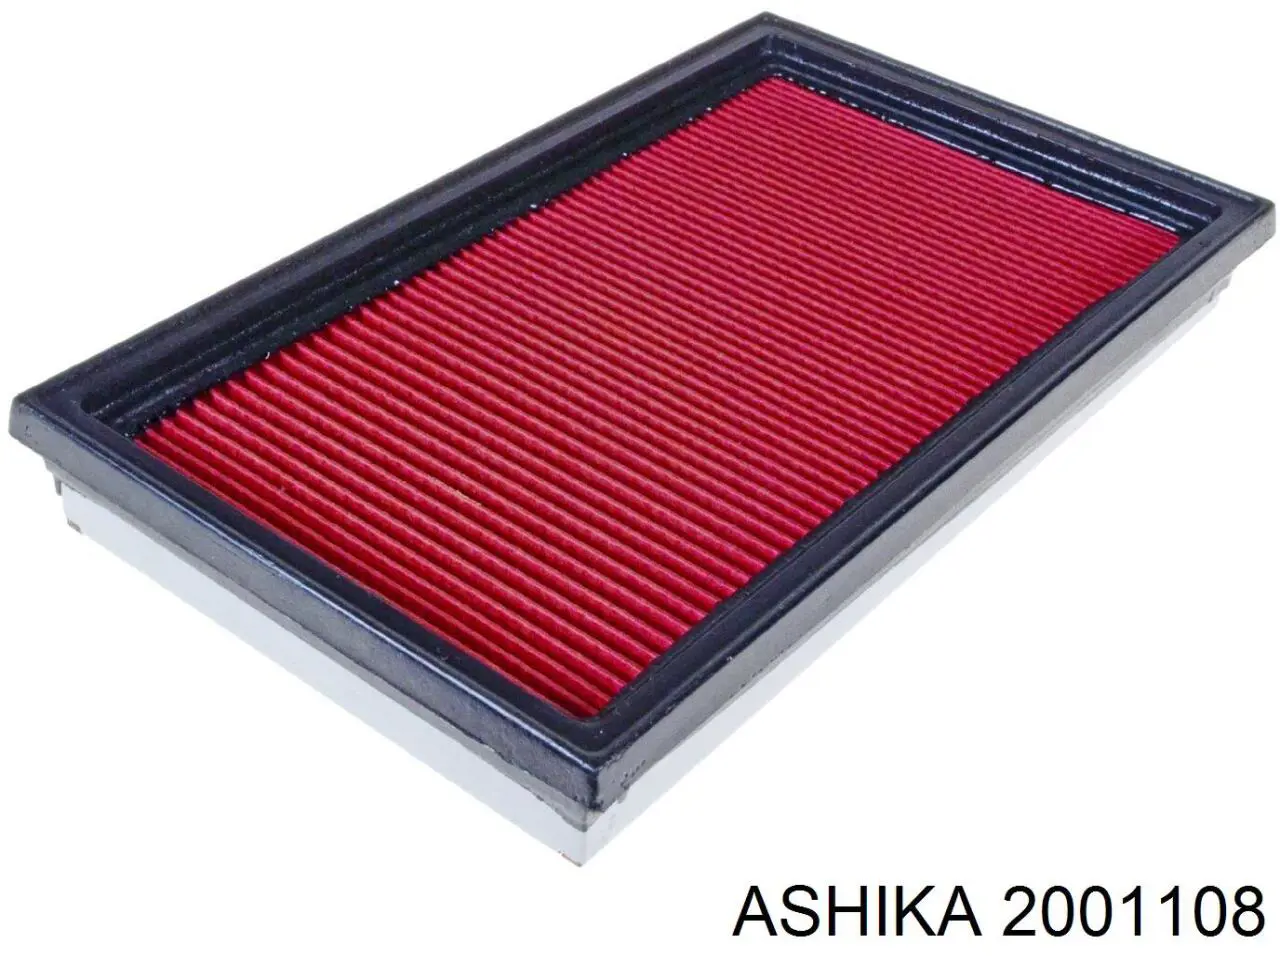 2001108 Ashika filtro de aire